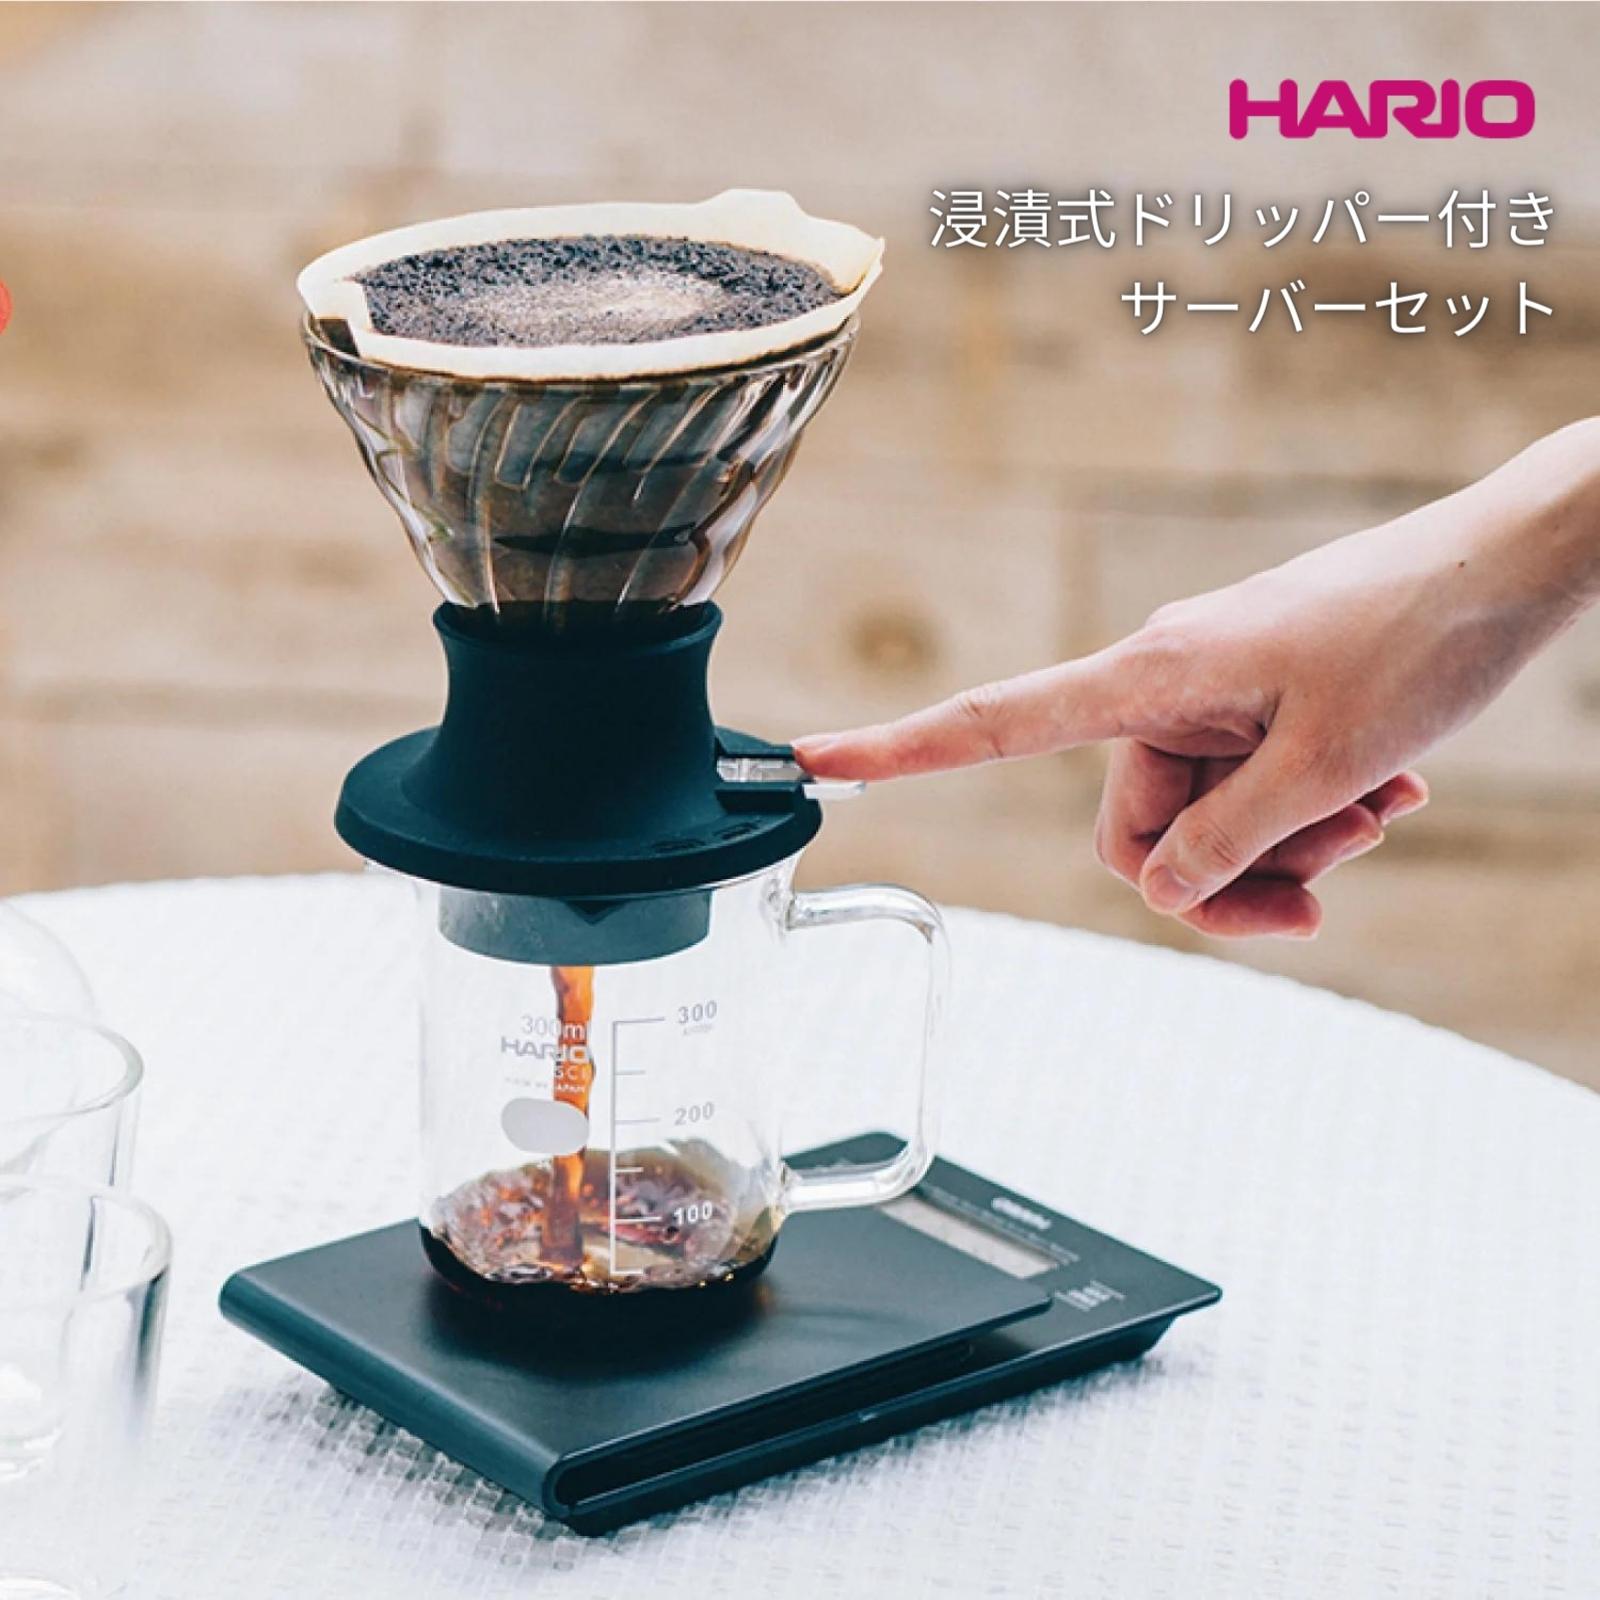 ハリオ 浸漬式 ドリッパースイッチサーバーセット SSD-5012-B ドリッパーセット コーヒー ドリッパー サーバー セット 日本製 円錐 ガラス